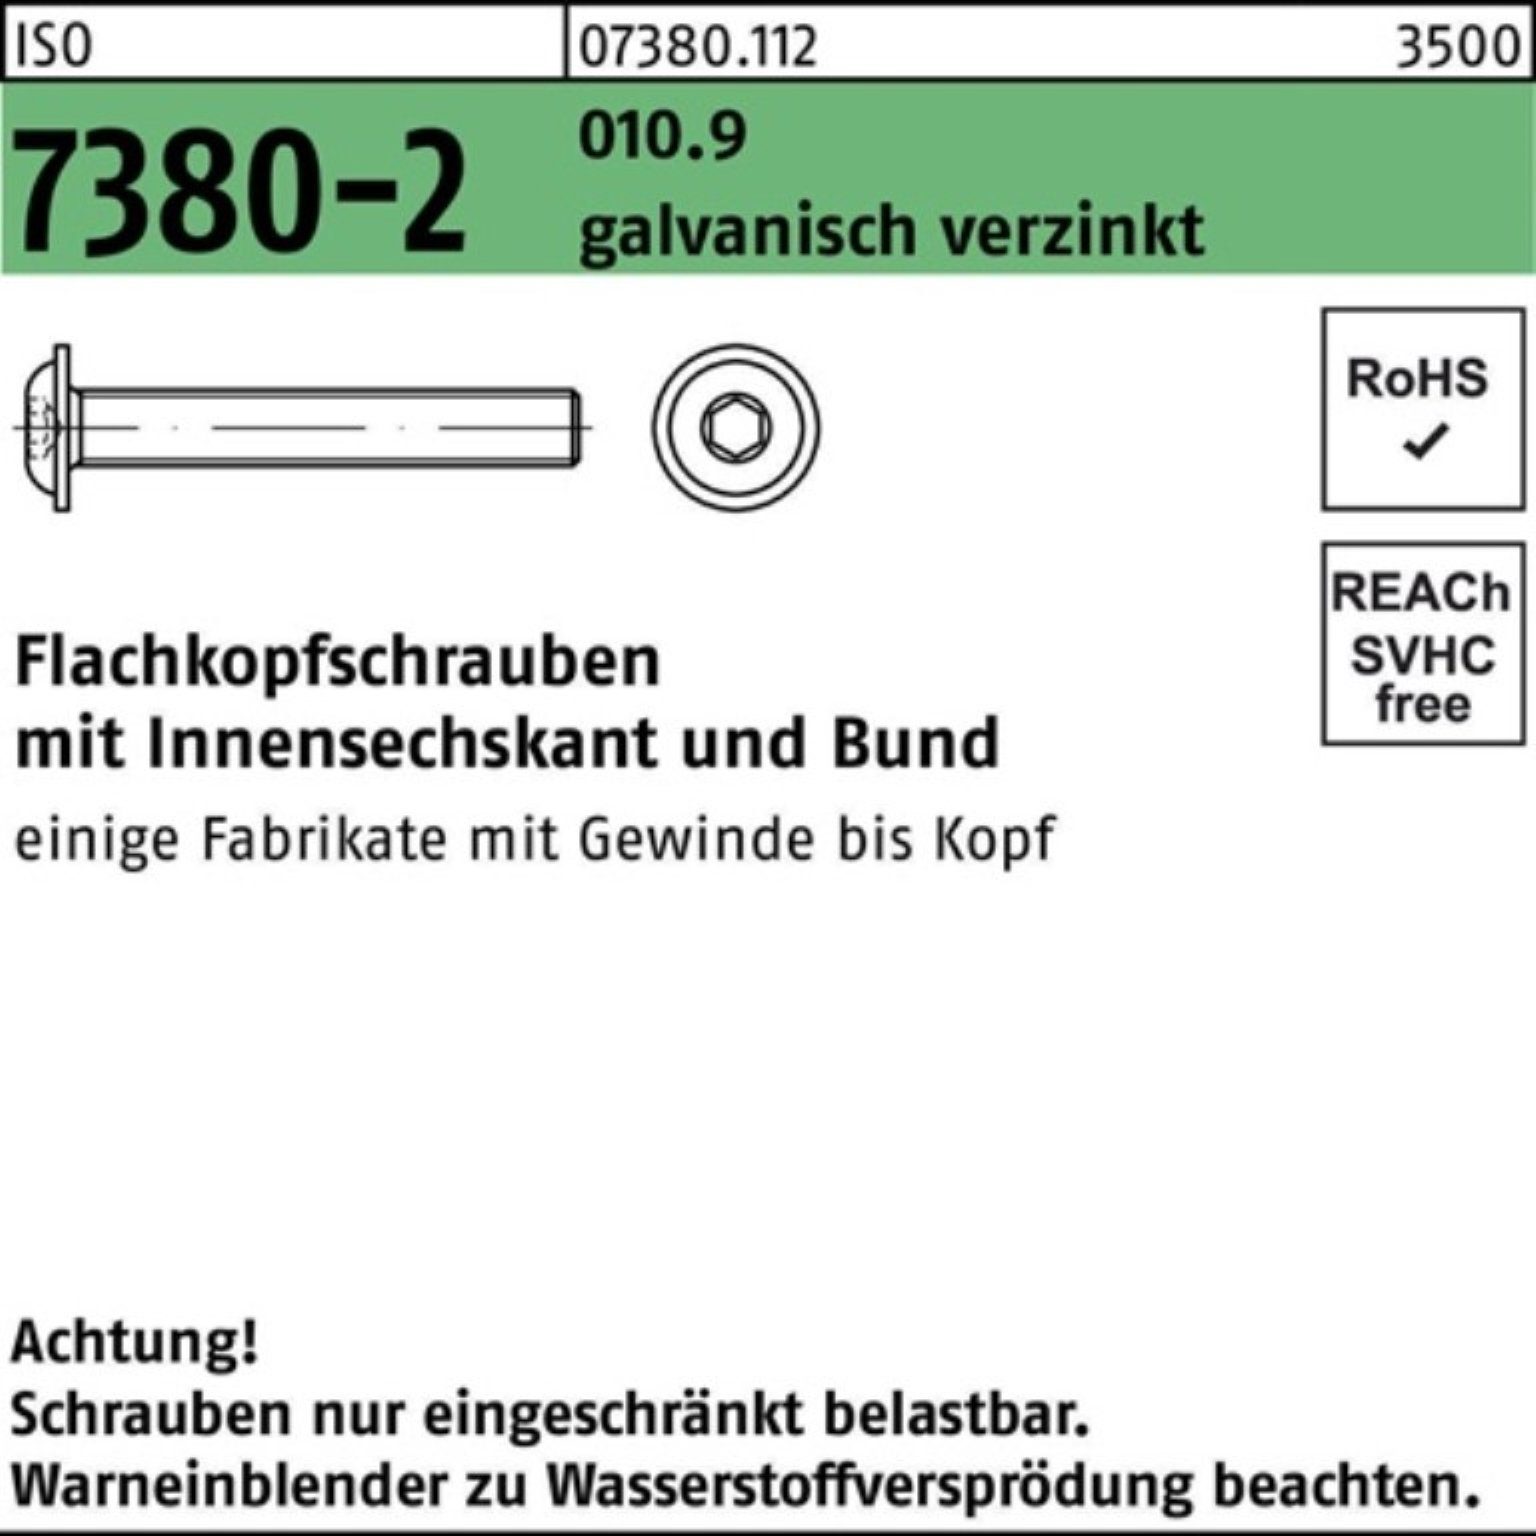 Reyher Schraube 200er Pack Bund/Innen-6kt gal Flachkopfschraube 010.9 7380-2 ISO M8x25